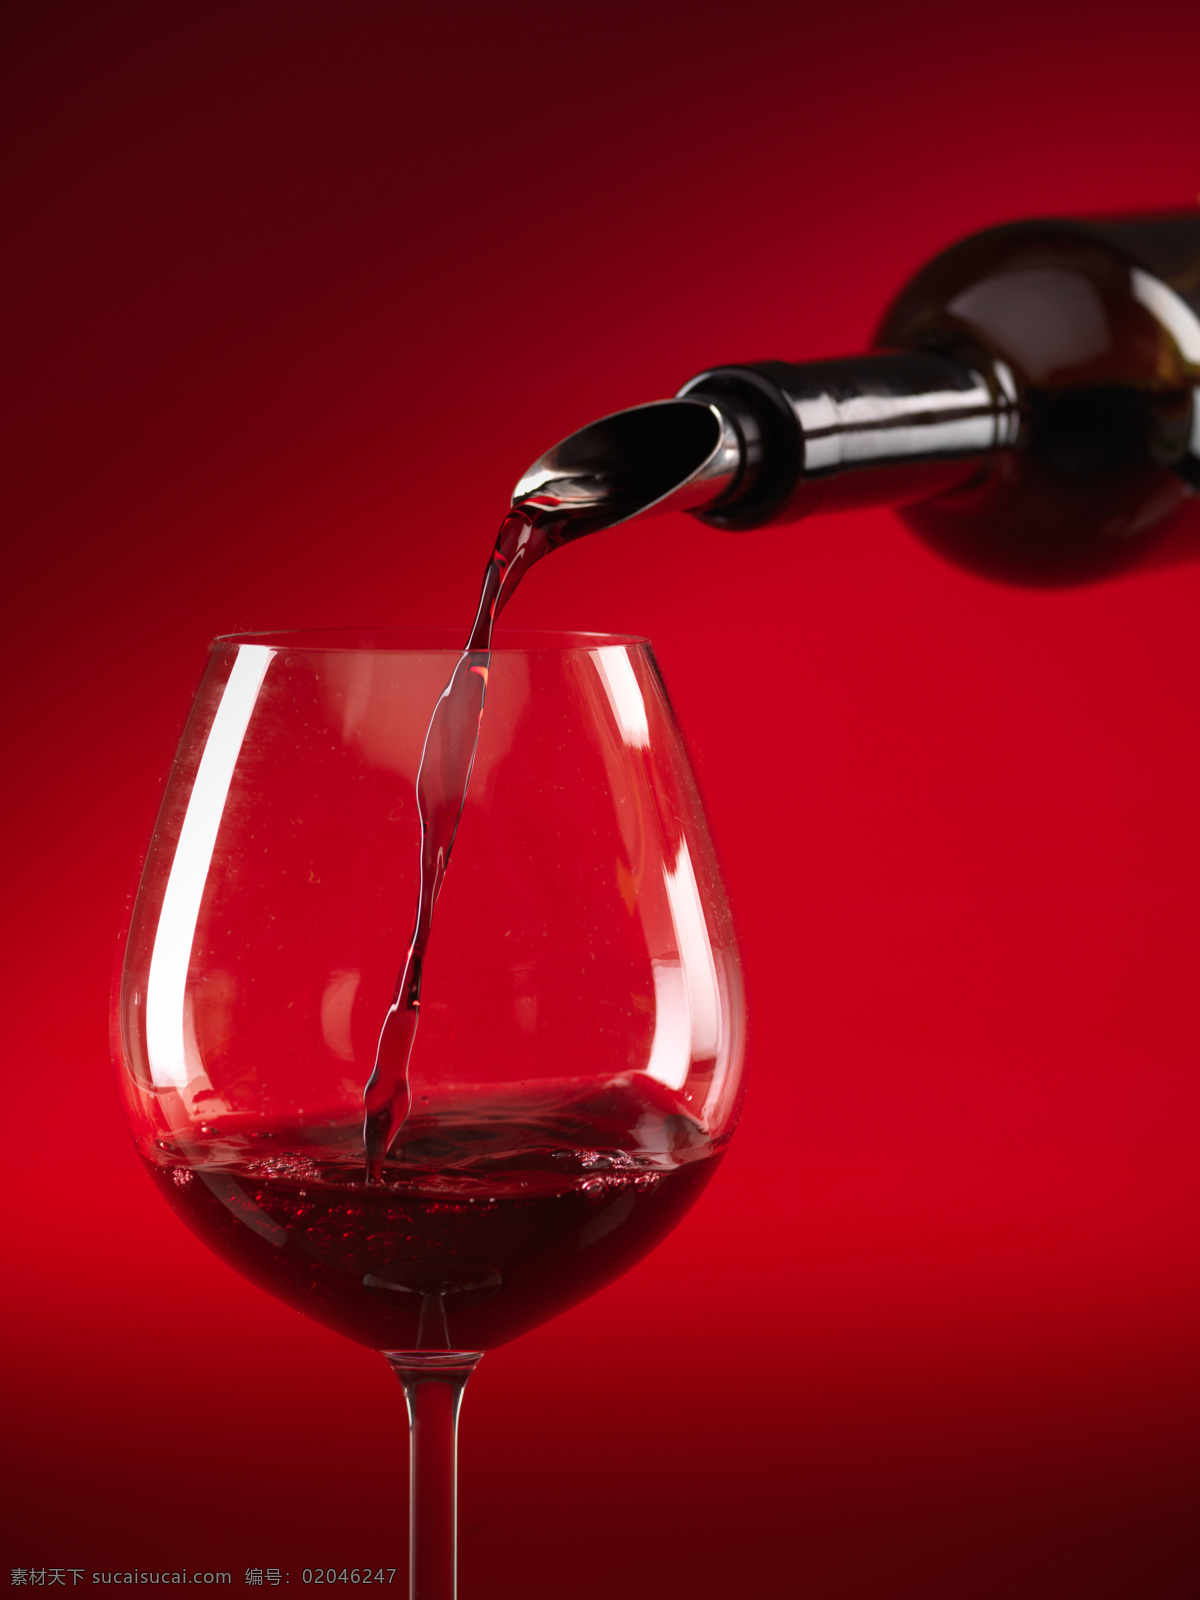 红酒和高脚杯 饮料 饮品 酒类 红酒 葡萄酒 高贵 典雅 高脚杯 倒酒 液体 流动 酒水饮料 餐饮美食 红色